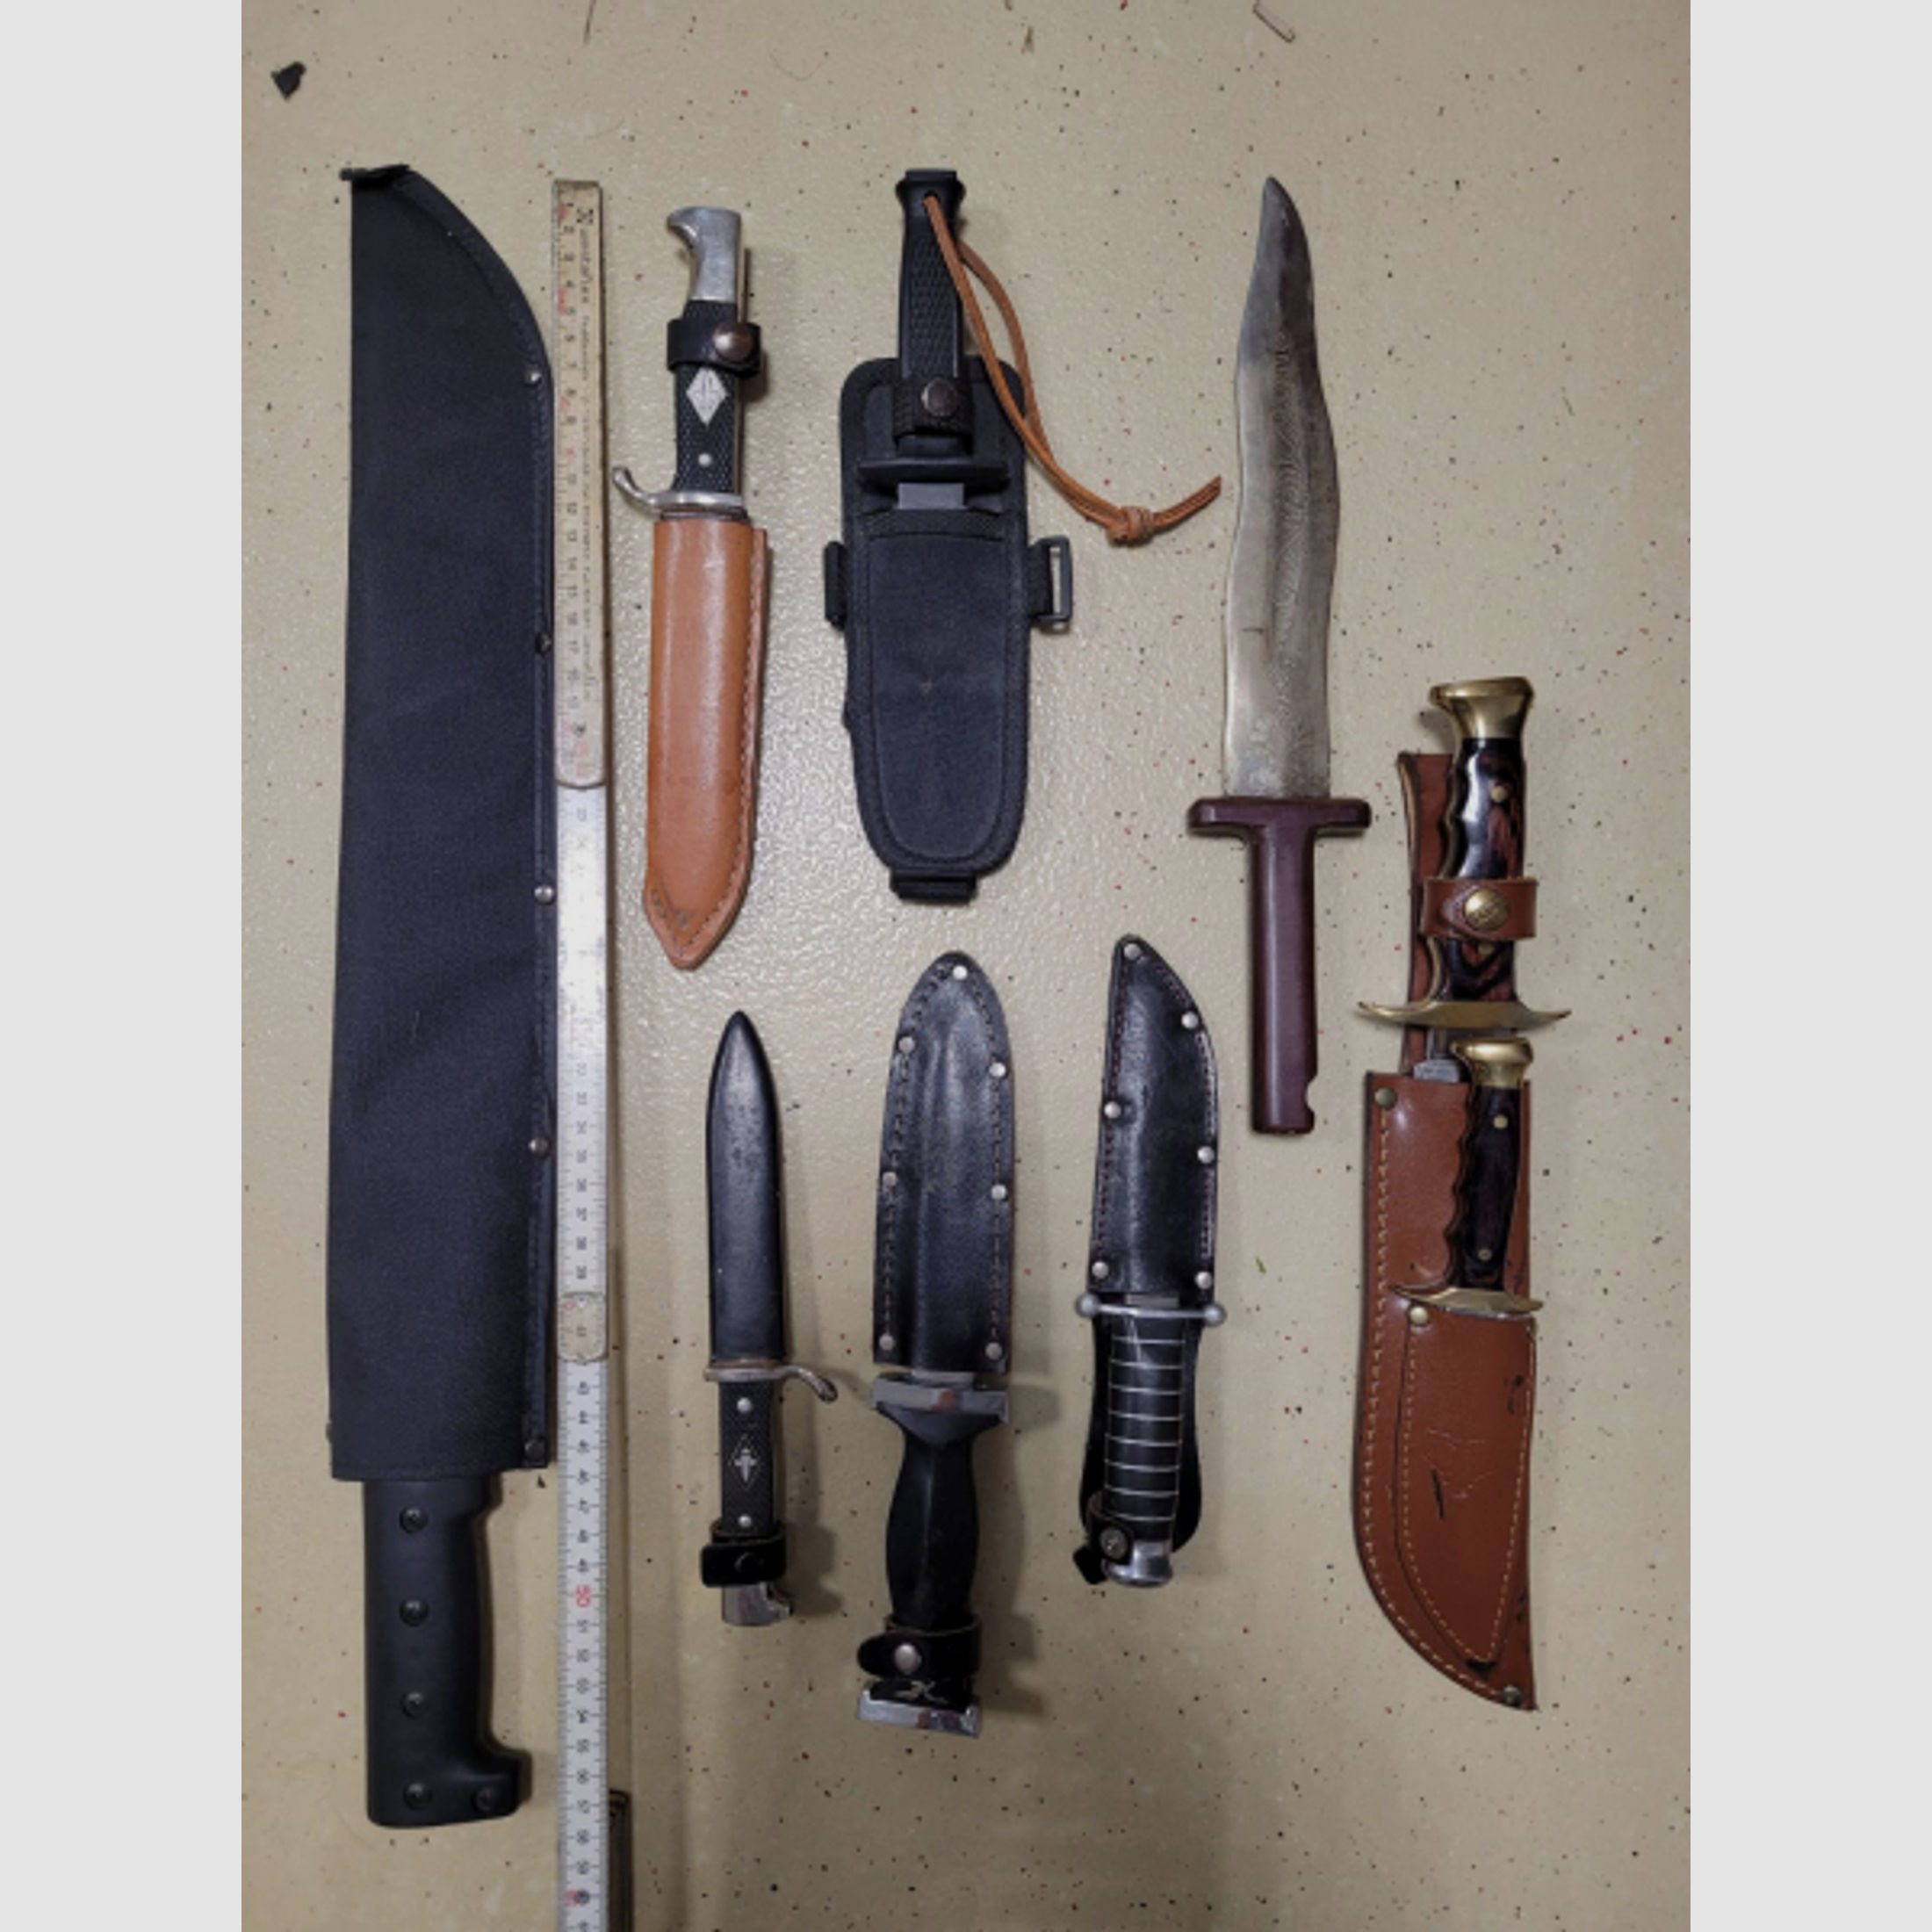 Sammlung aus 8 Messern und 1 Machete